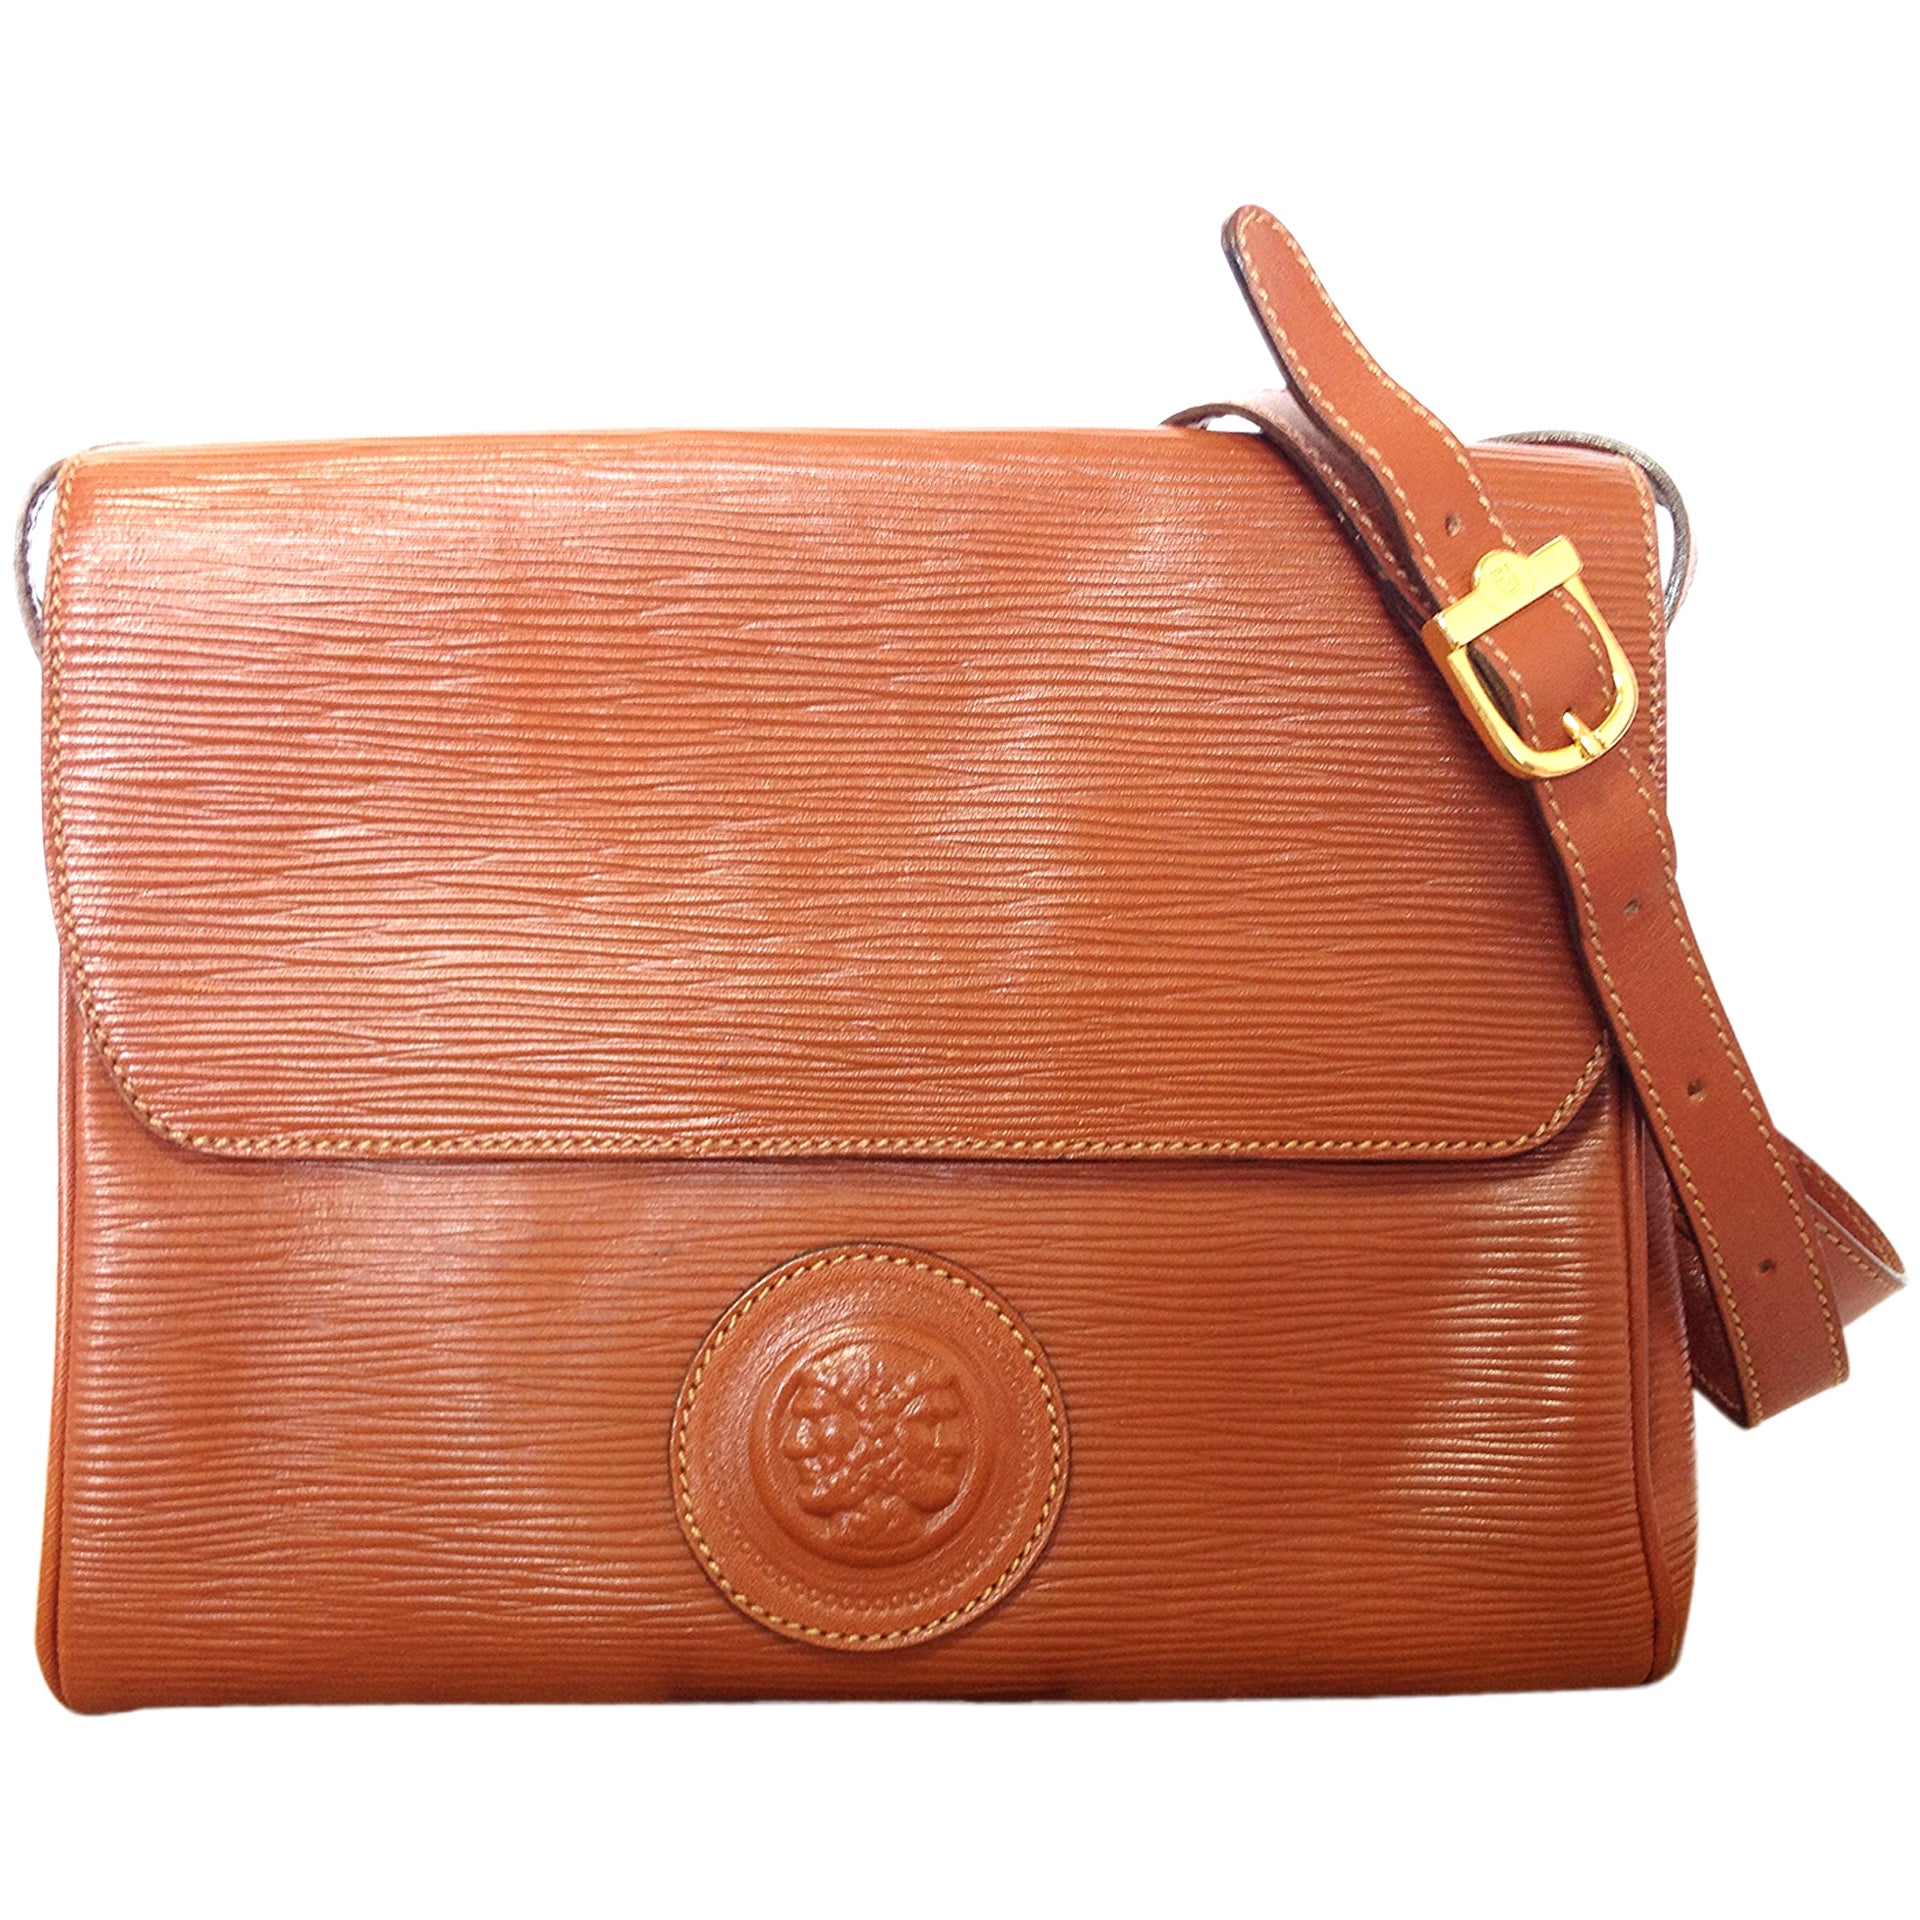 Vintage FENDI brown epi leather messenger bag, shoulder purse with 